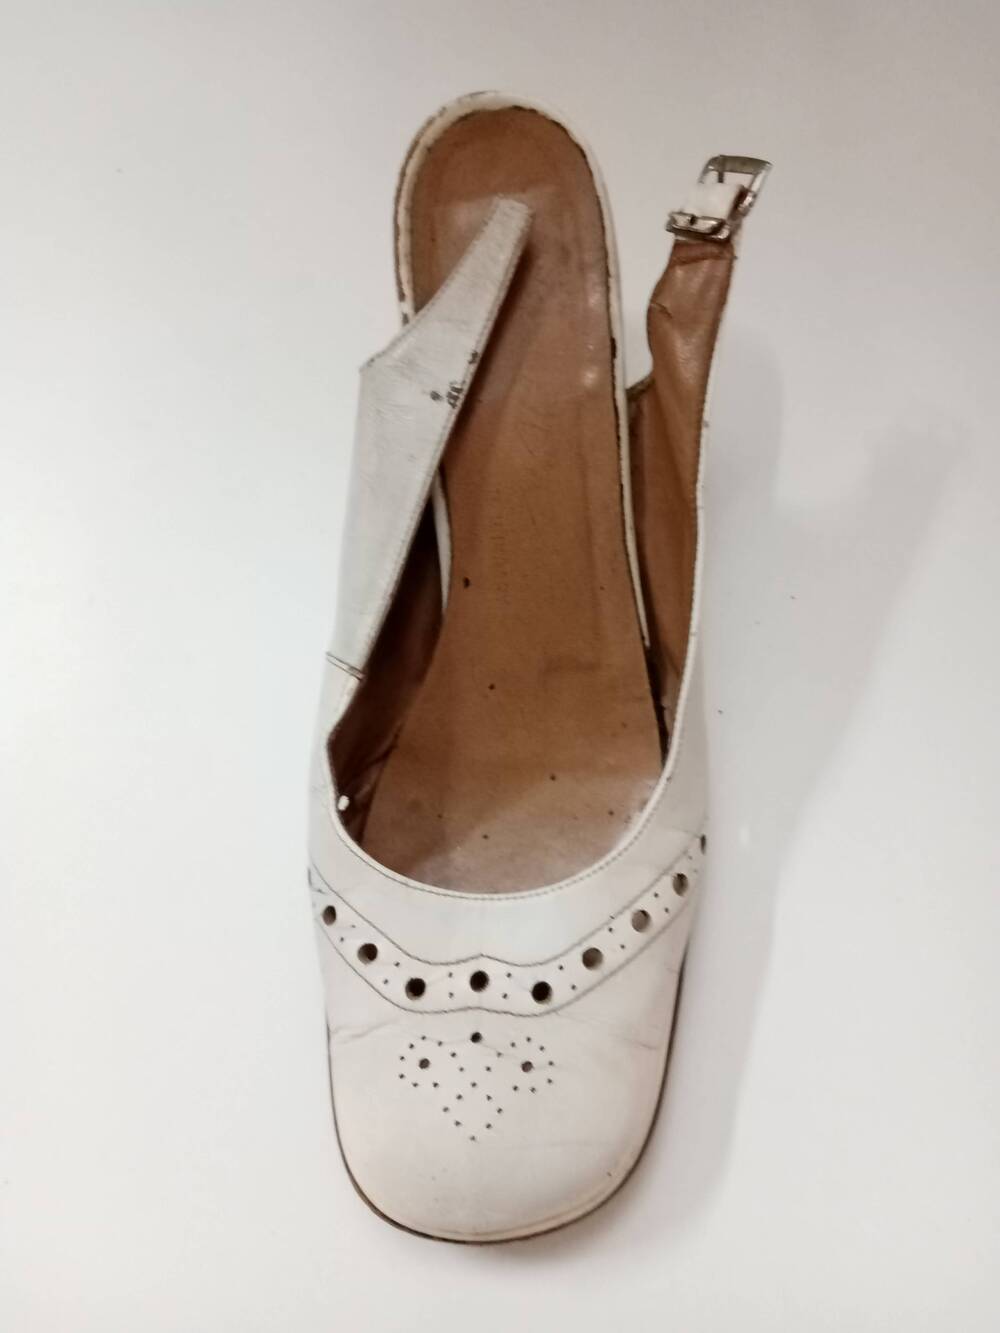 Босоножка  -  белая, левая,   кожаная,  вид женской обуви для тёплых времён года,  носится на босую ногу.  Производство - Венгрия, начало 1970-х годов.